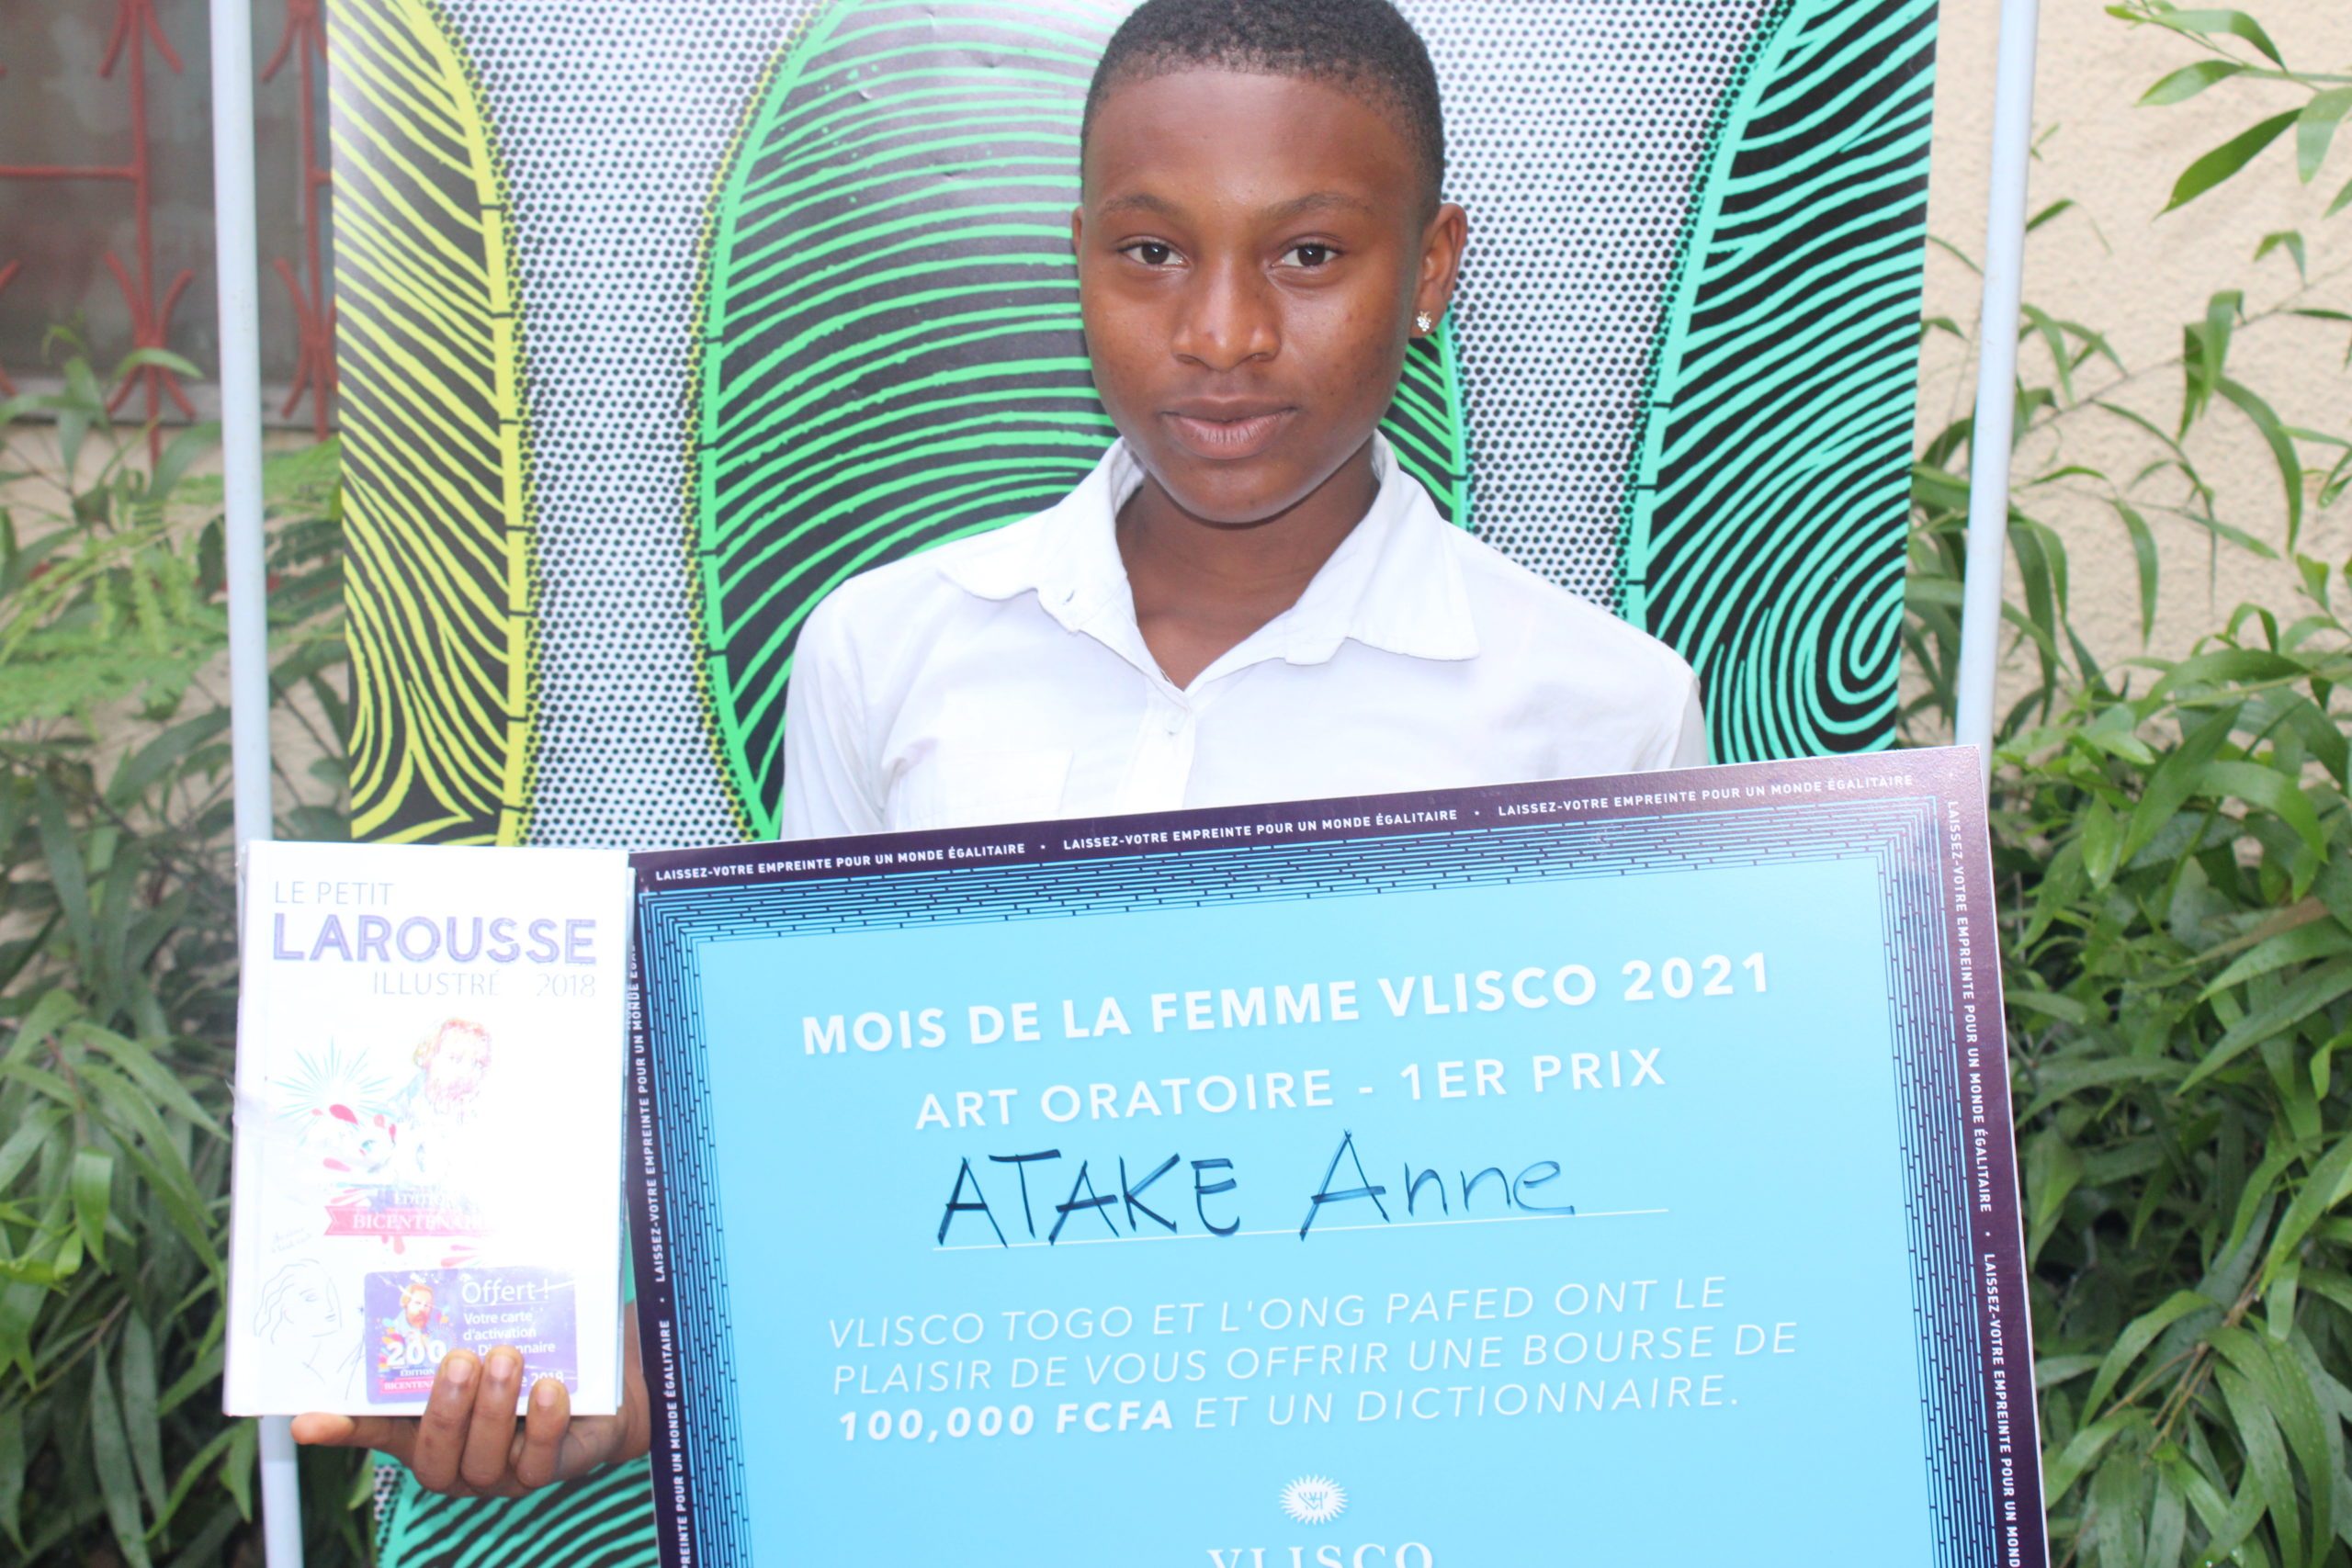 Sokodé: Mlle ATAKE Anne, élève au lycée moderne de Sokodé, décroche la première place du concours d’art oratoire organisé par VLISCO et l’ONG PAFED